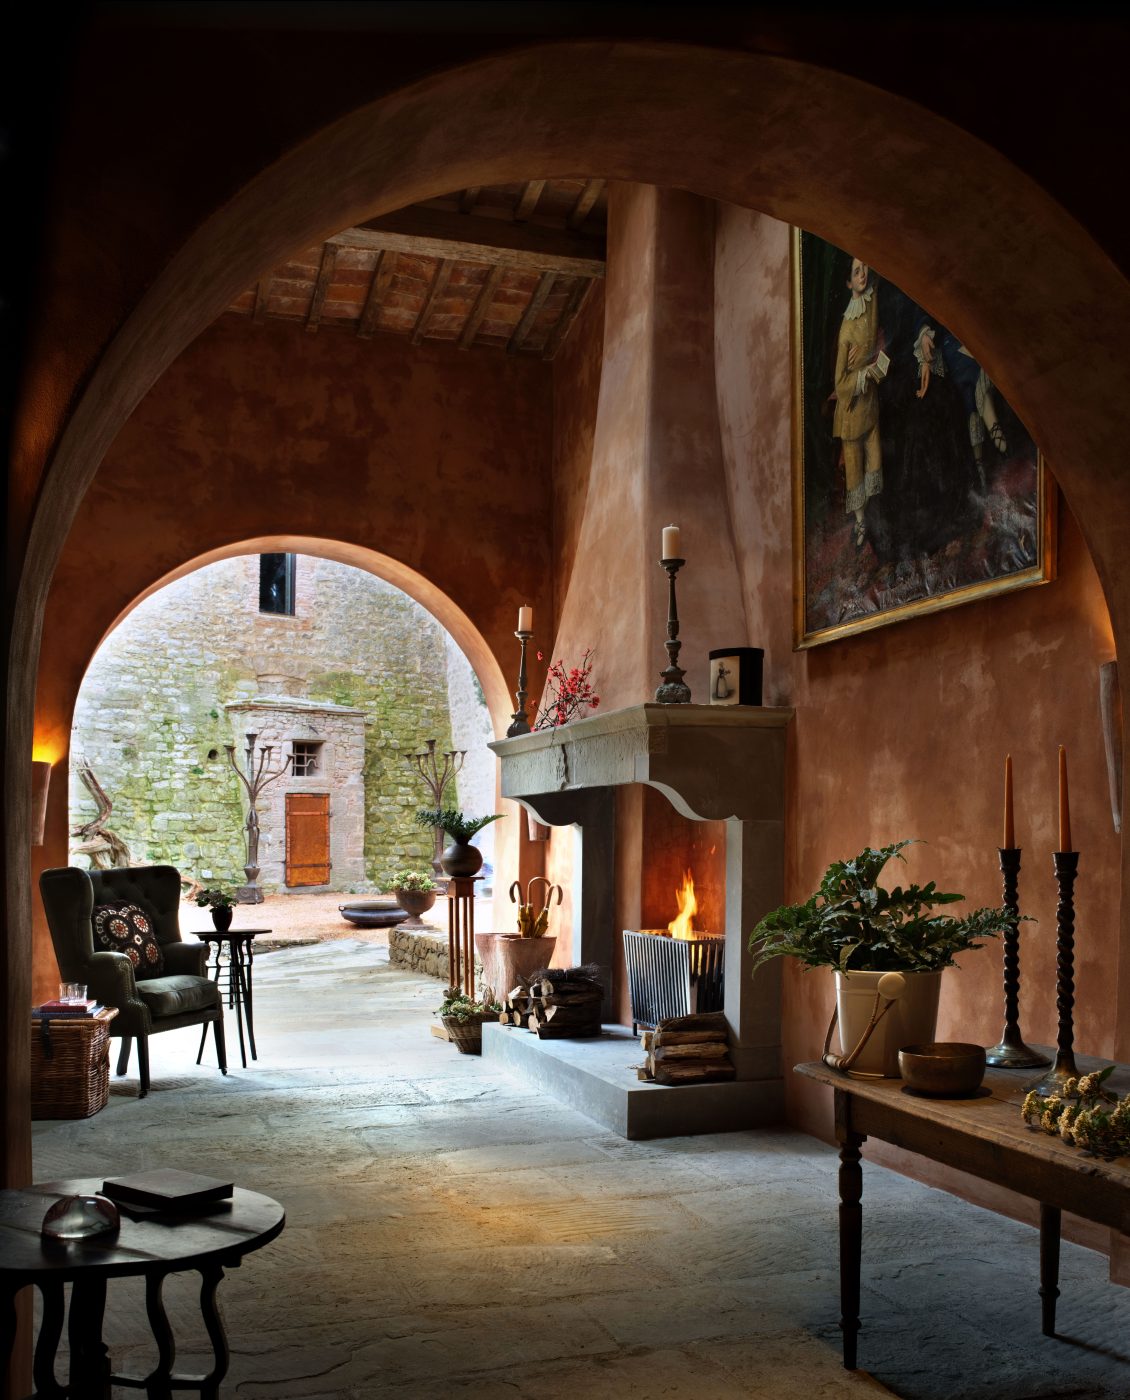 boot room and reception area of the Castello di Reschio hotel